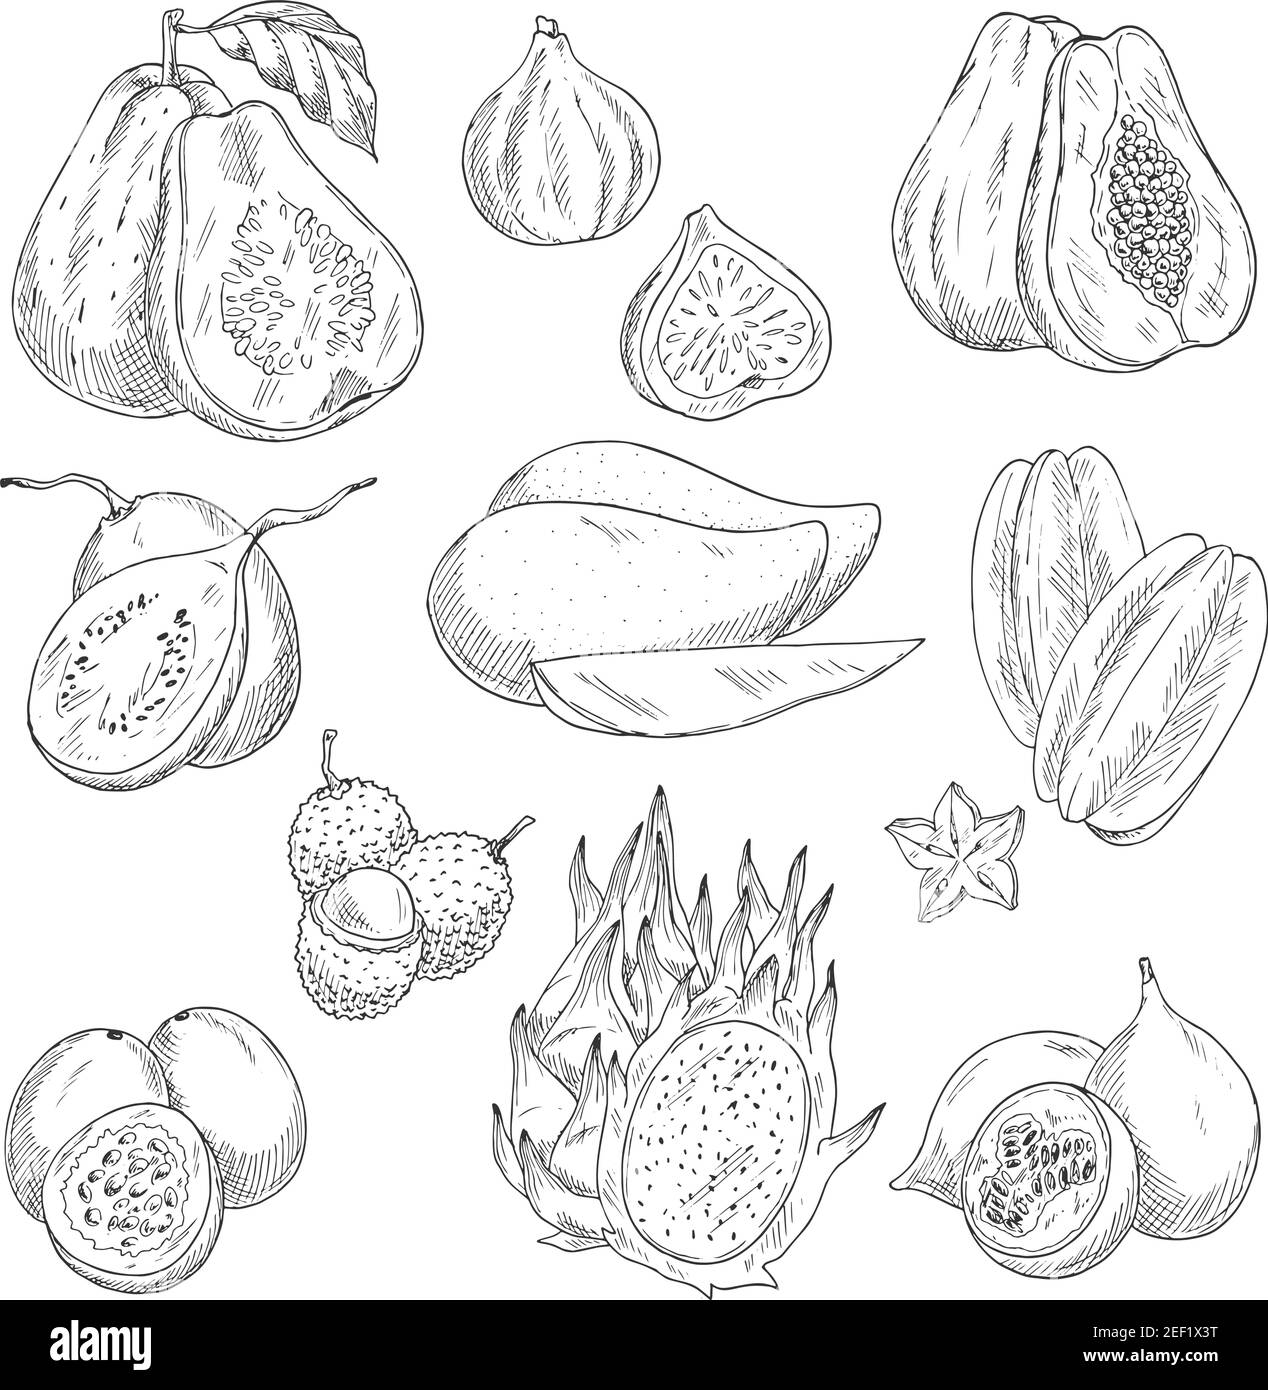 Exotische tropische Früchte Skizzen Ikonen. Vector isoliert Satz von Guava, Feigen oder Papaya und Avocado, Feijoa oder Carambola Starfruit und lichee, Mangostan oder Stock Vektor